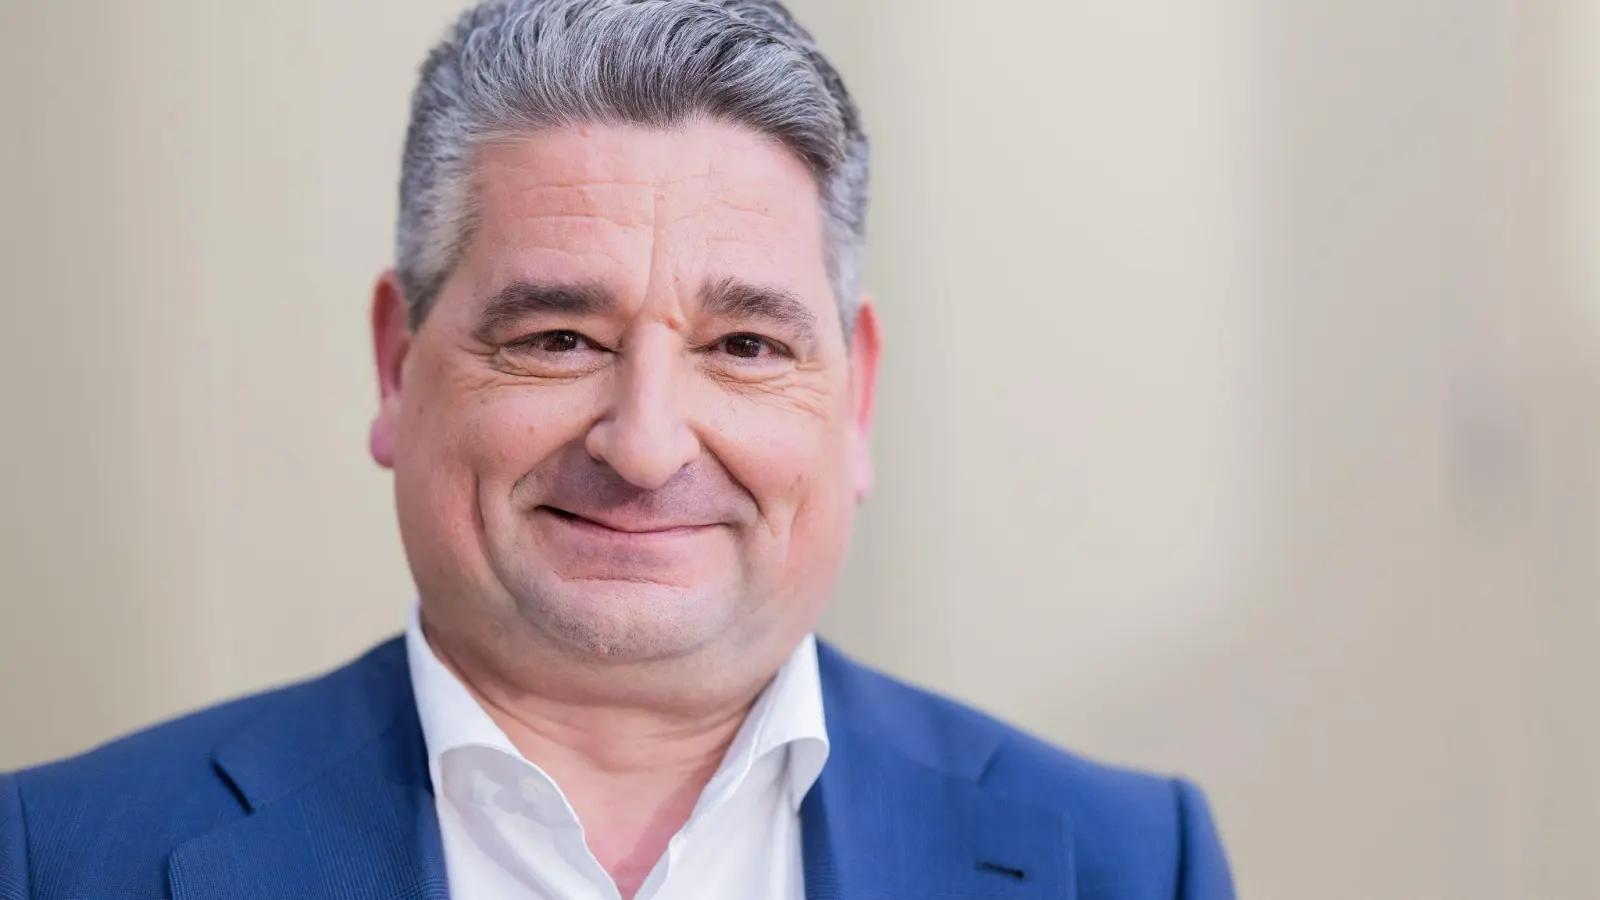 Miguel López ist der neue Vorstandsvorsitzende von Thyssenkrupp. (Foto: Rolf Vennenbernd/dpa)